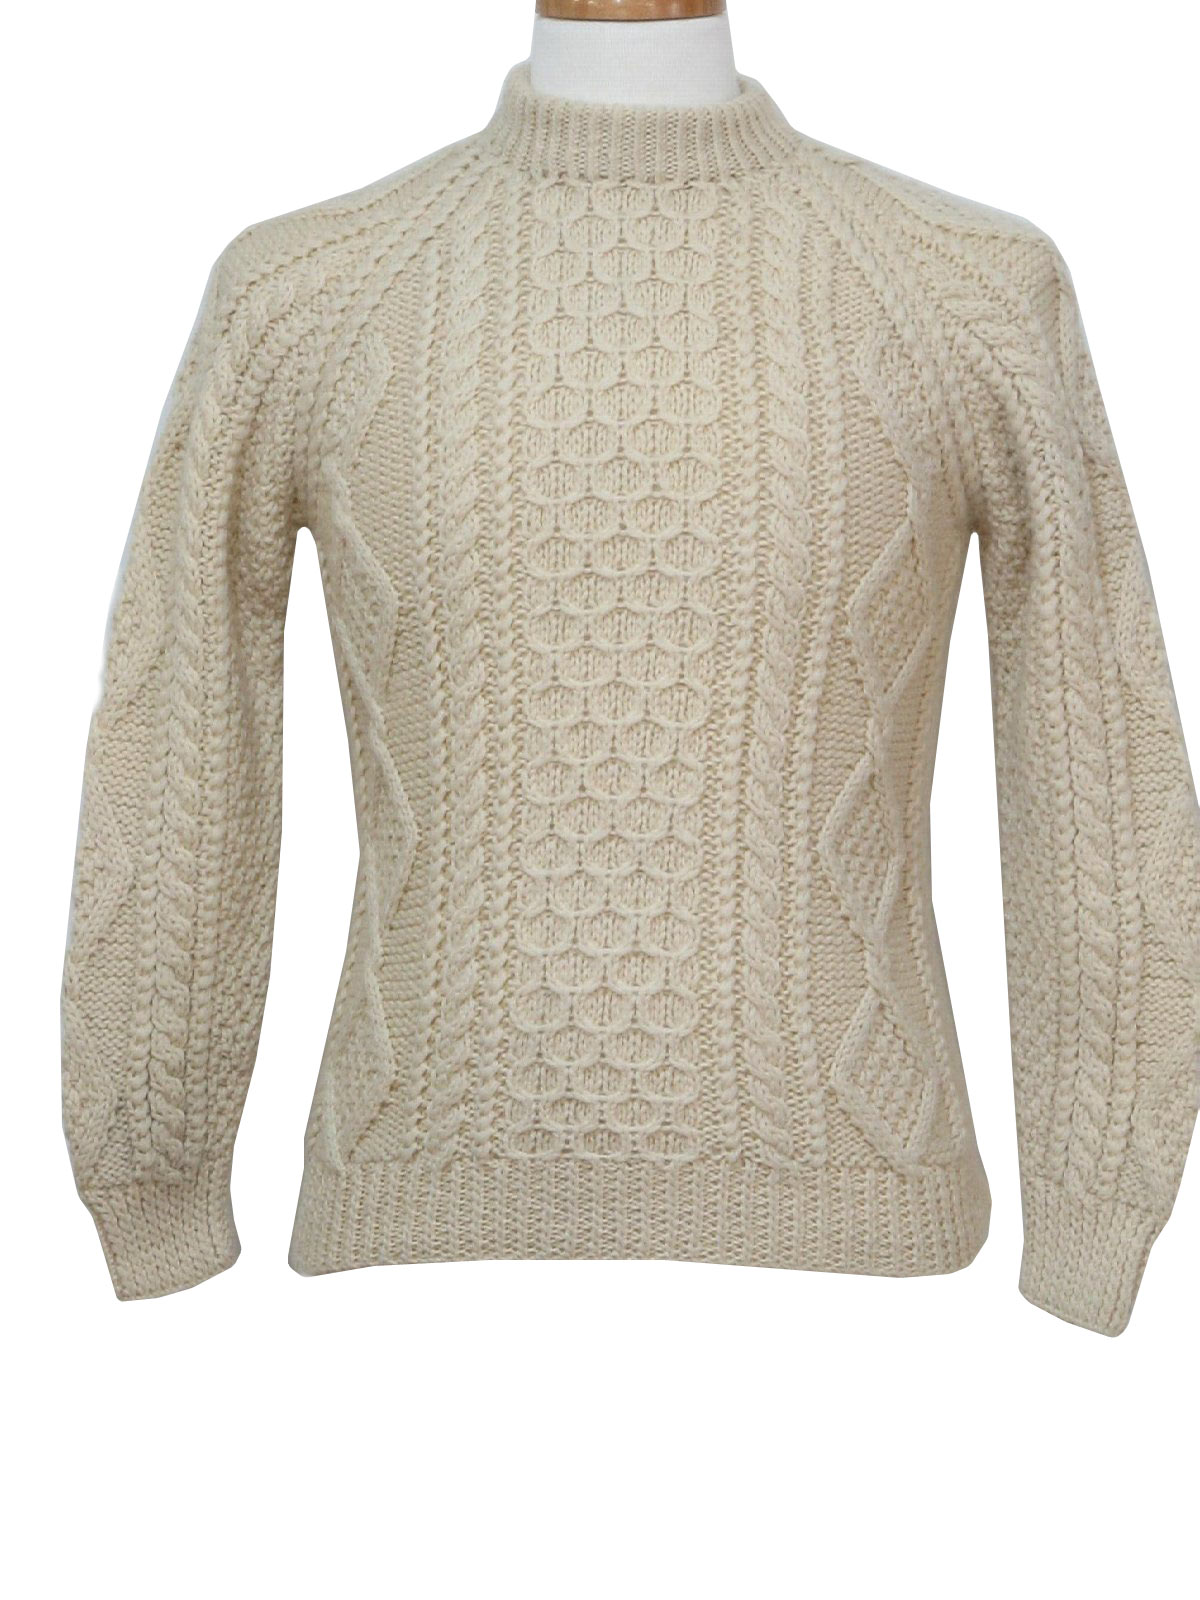 Retro 70s Sweater (Aubergine) : 70s -Aubergine- Mens cream natural wool ...